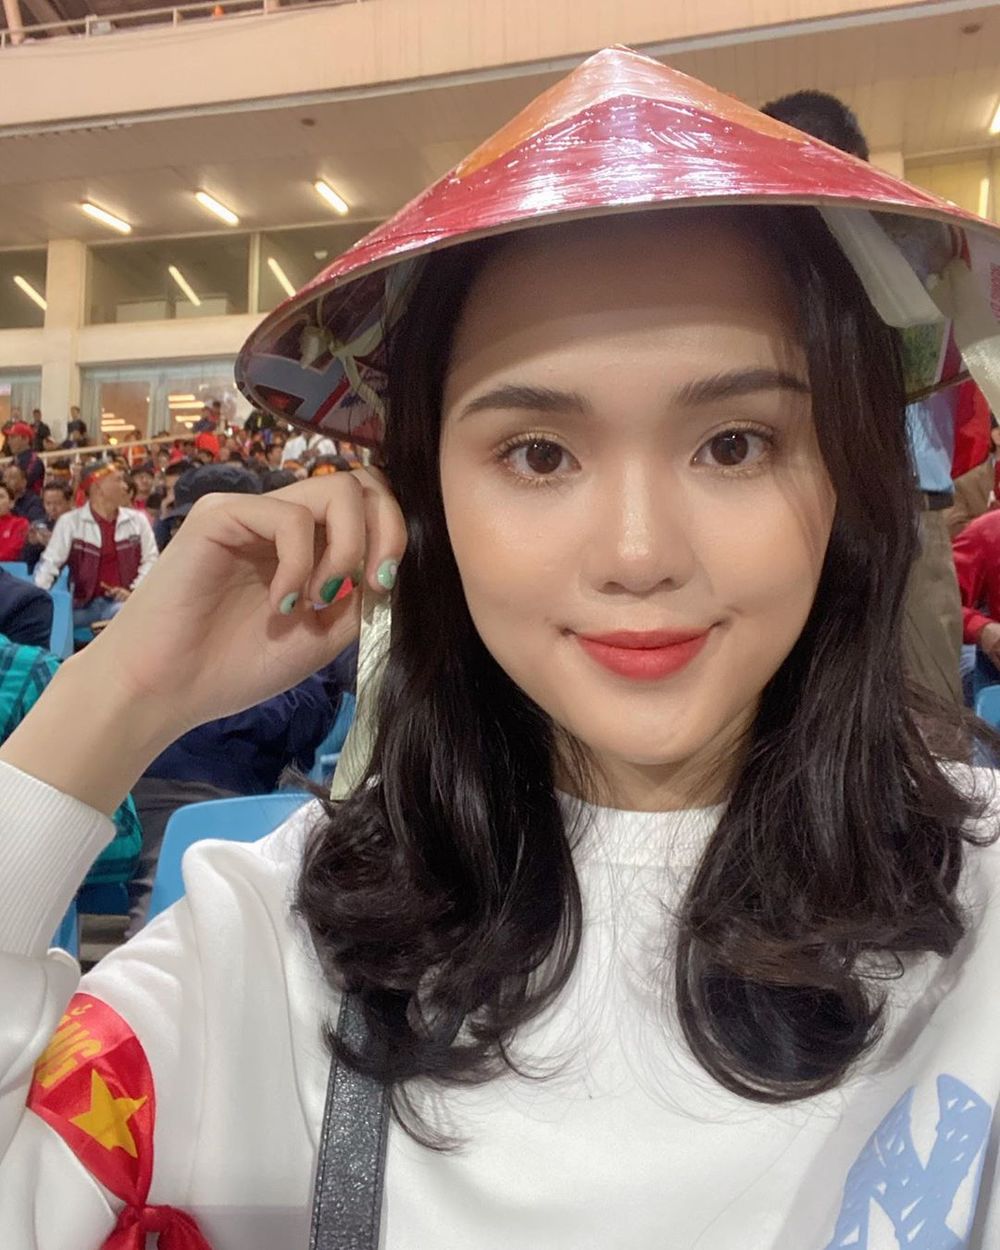  
Quỳnh Anh có mặt trên khán đài trong trận đấu giữa Việt Nam - Thái Lan. (Ảnh: Instagrama NV).